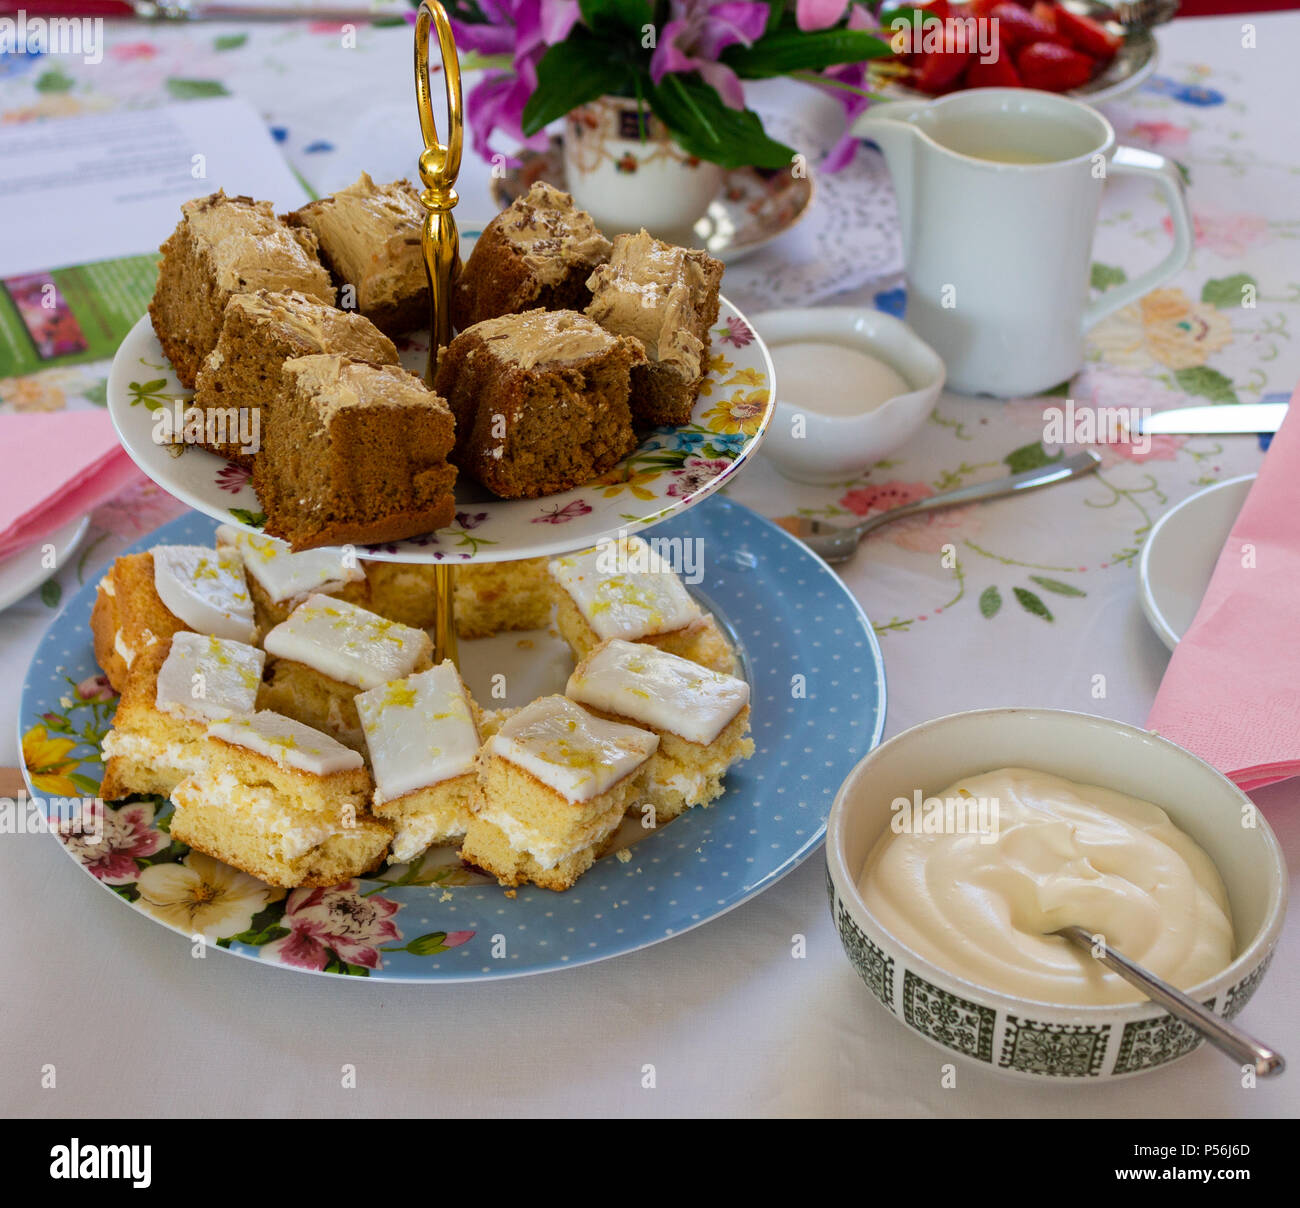 Il tè del pomeriggio con piastre di torte, crema, fragole steso su una tovaglia colorata Foto Stock